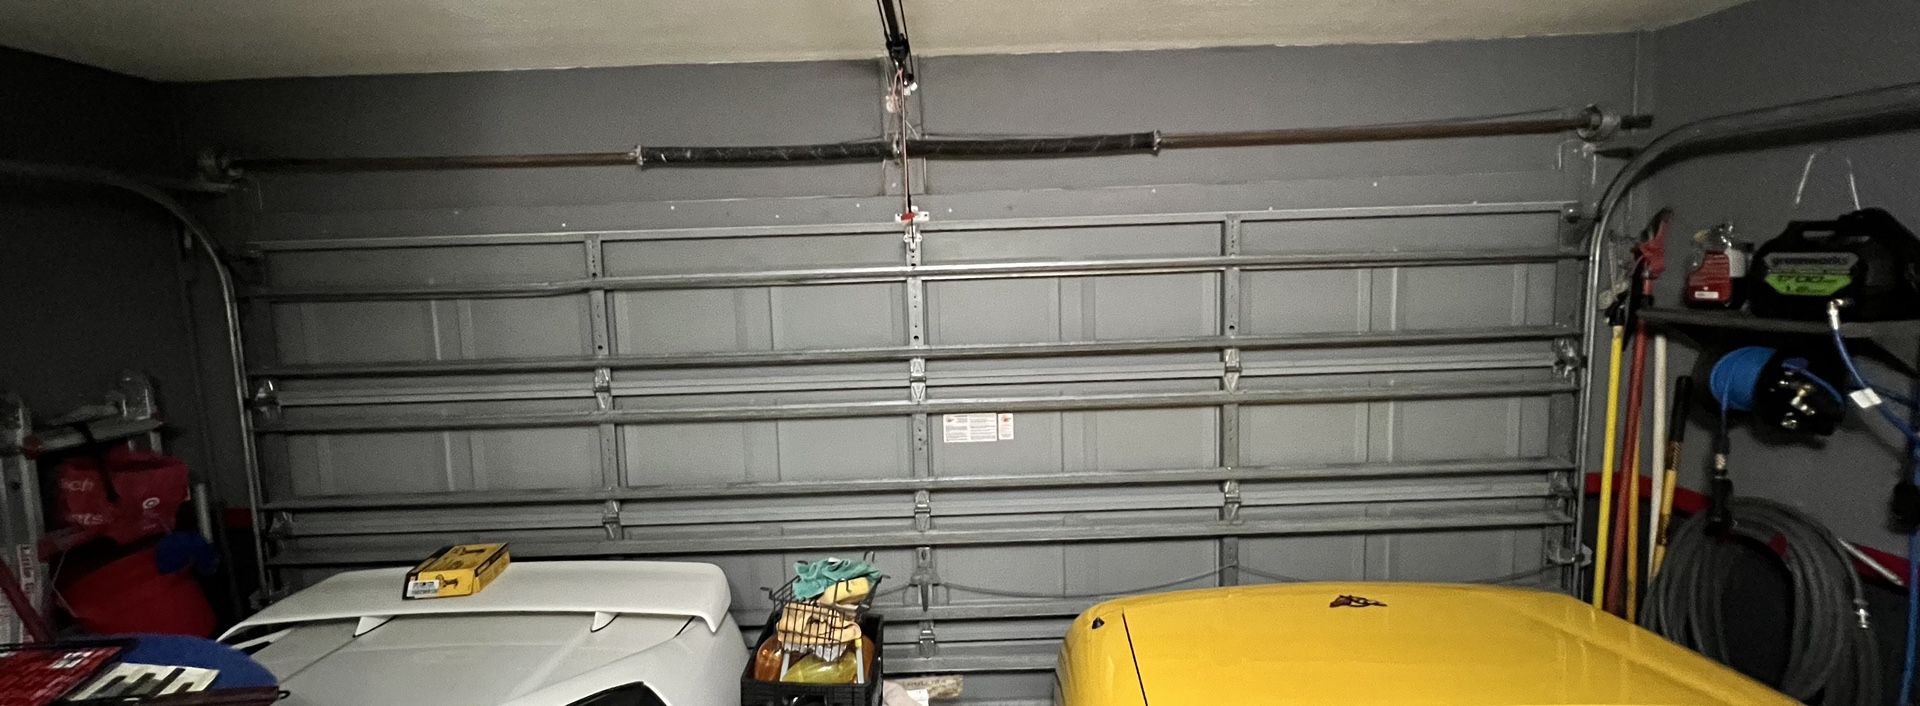 16 x 7 hurricane rated garage door